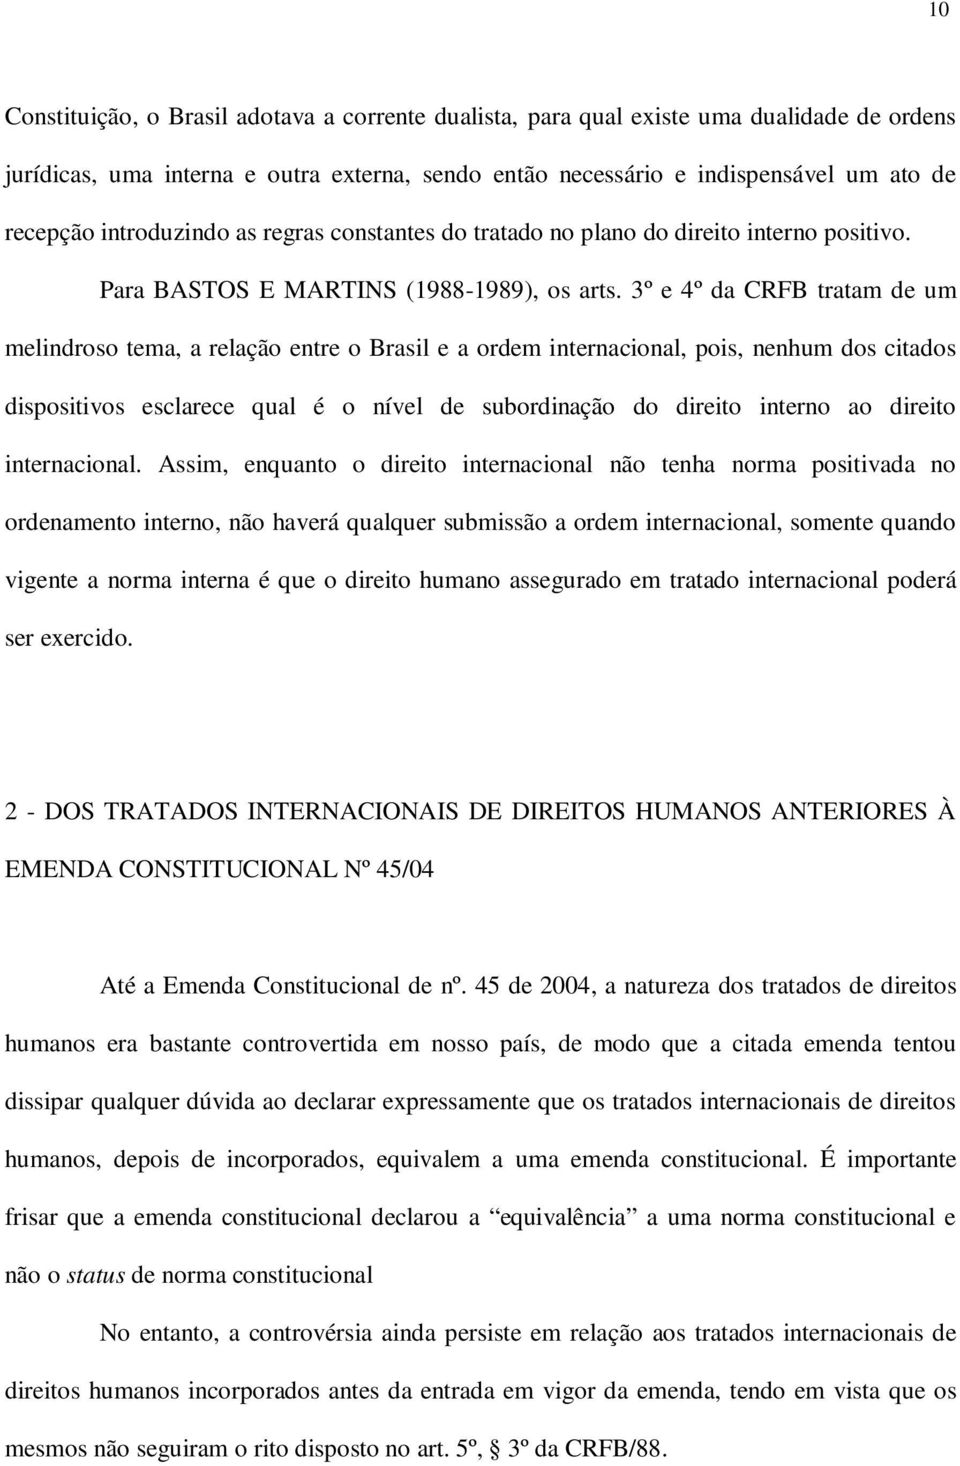 3º e 4º da CRFB tratam de um melindroso tema, a relação entre o Brasil e a ordem internacional, pois, nenhum dos citados dispositivos esclarece qual é o nível de subordinação do direito interno ao